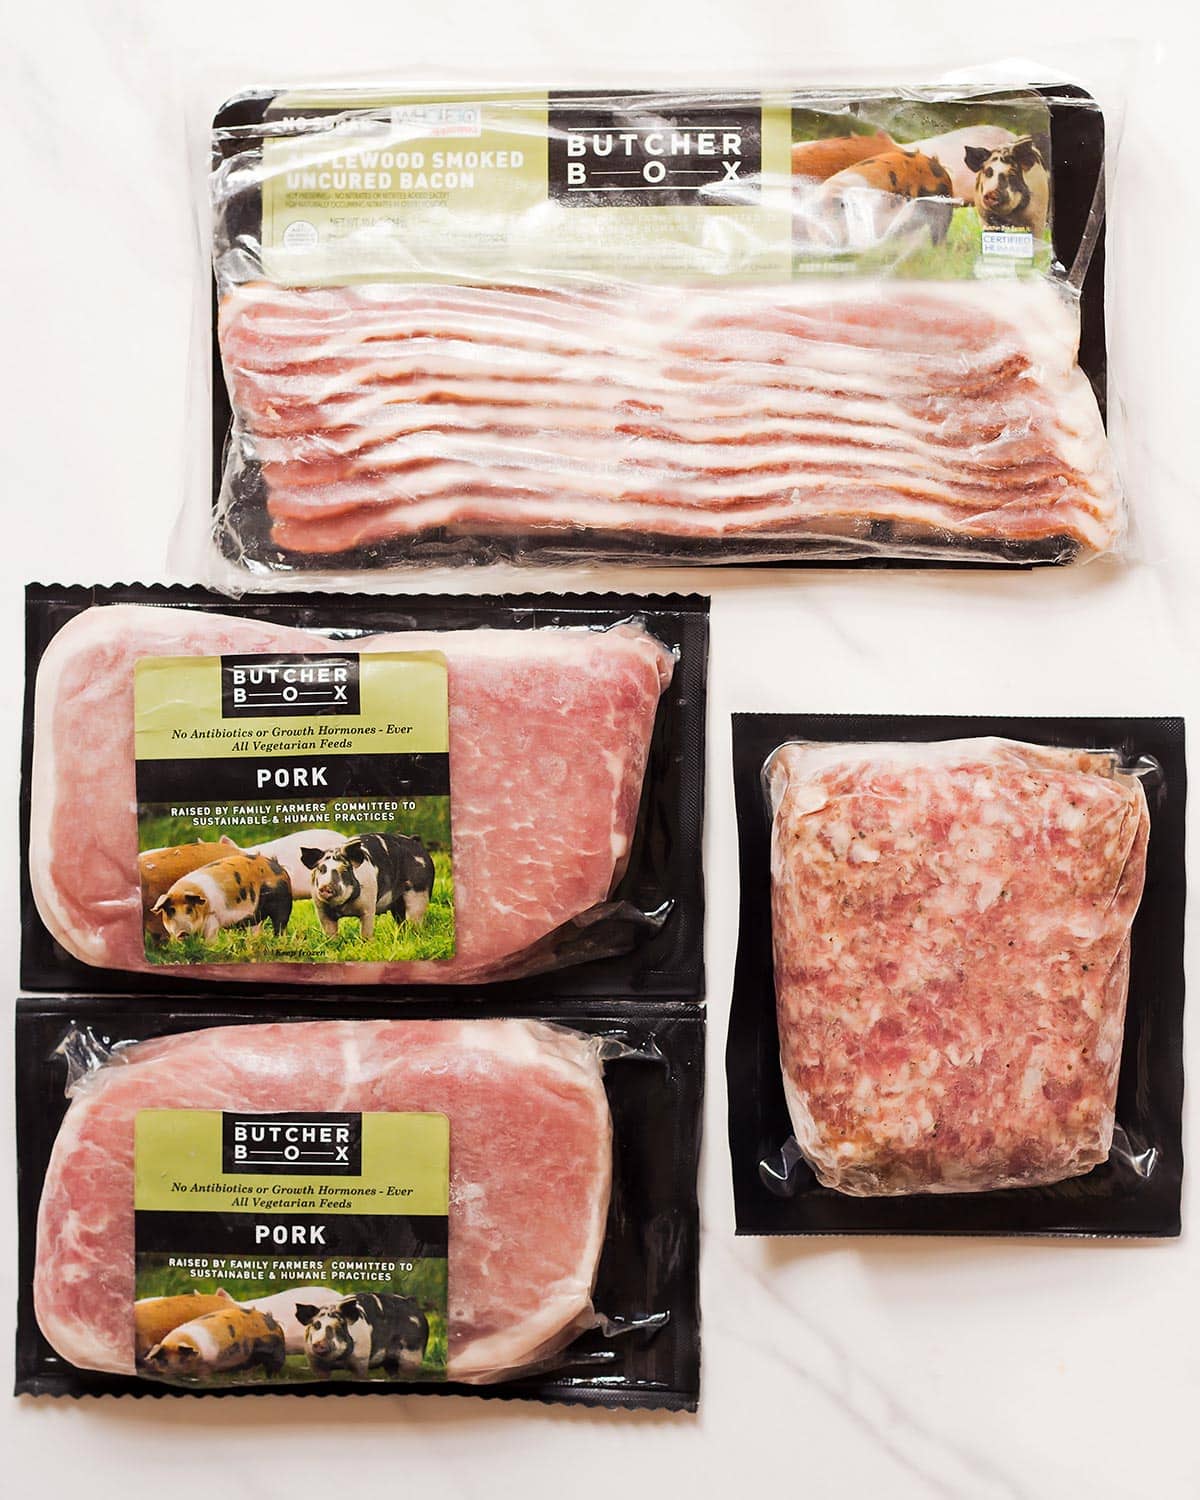 ButcherBox Heritage Pork chop, sausage, bacon